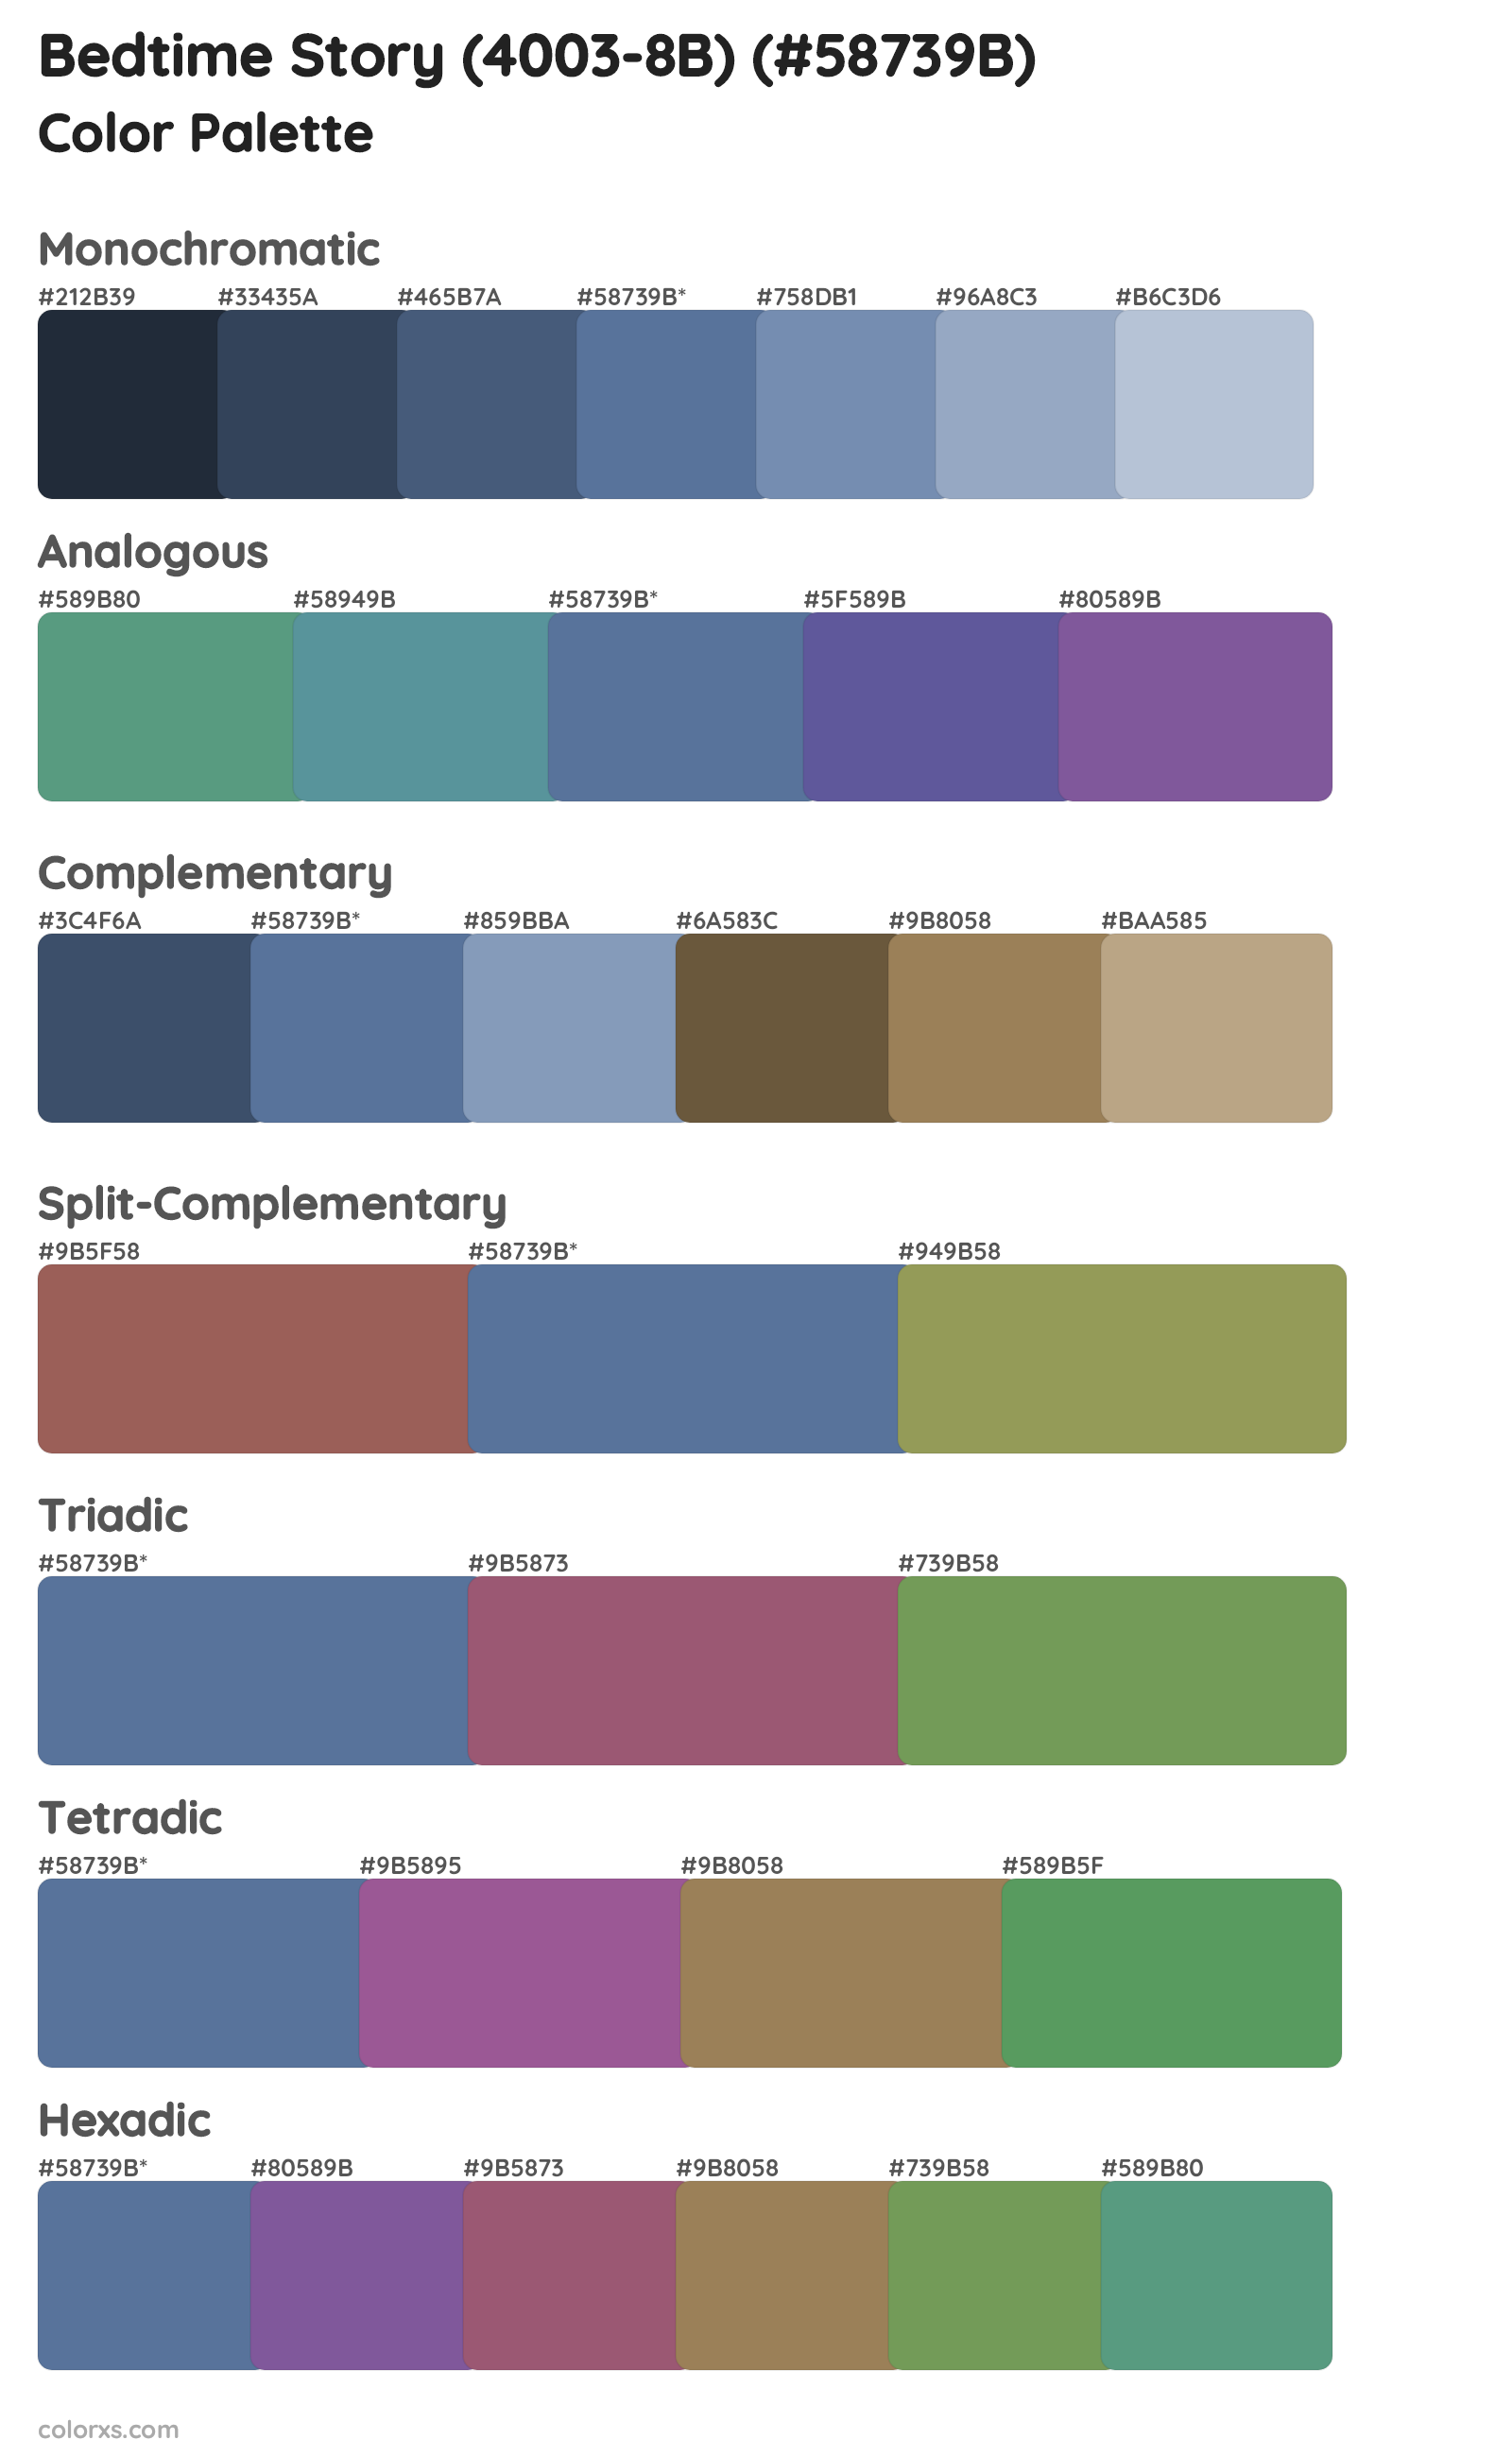 Bedtime Story (4003-8B) Color Scheme Palettes